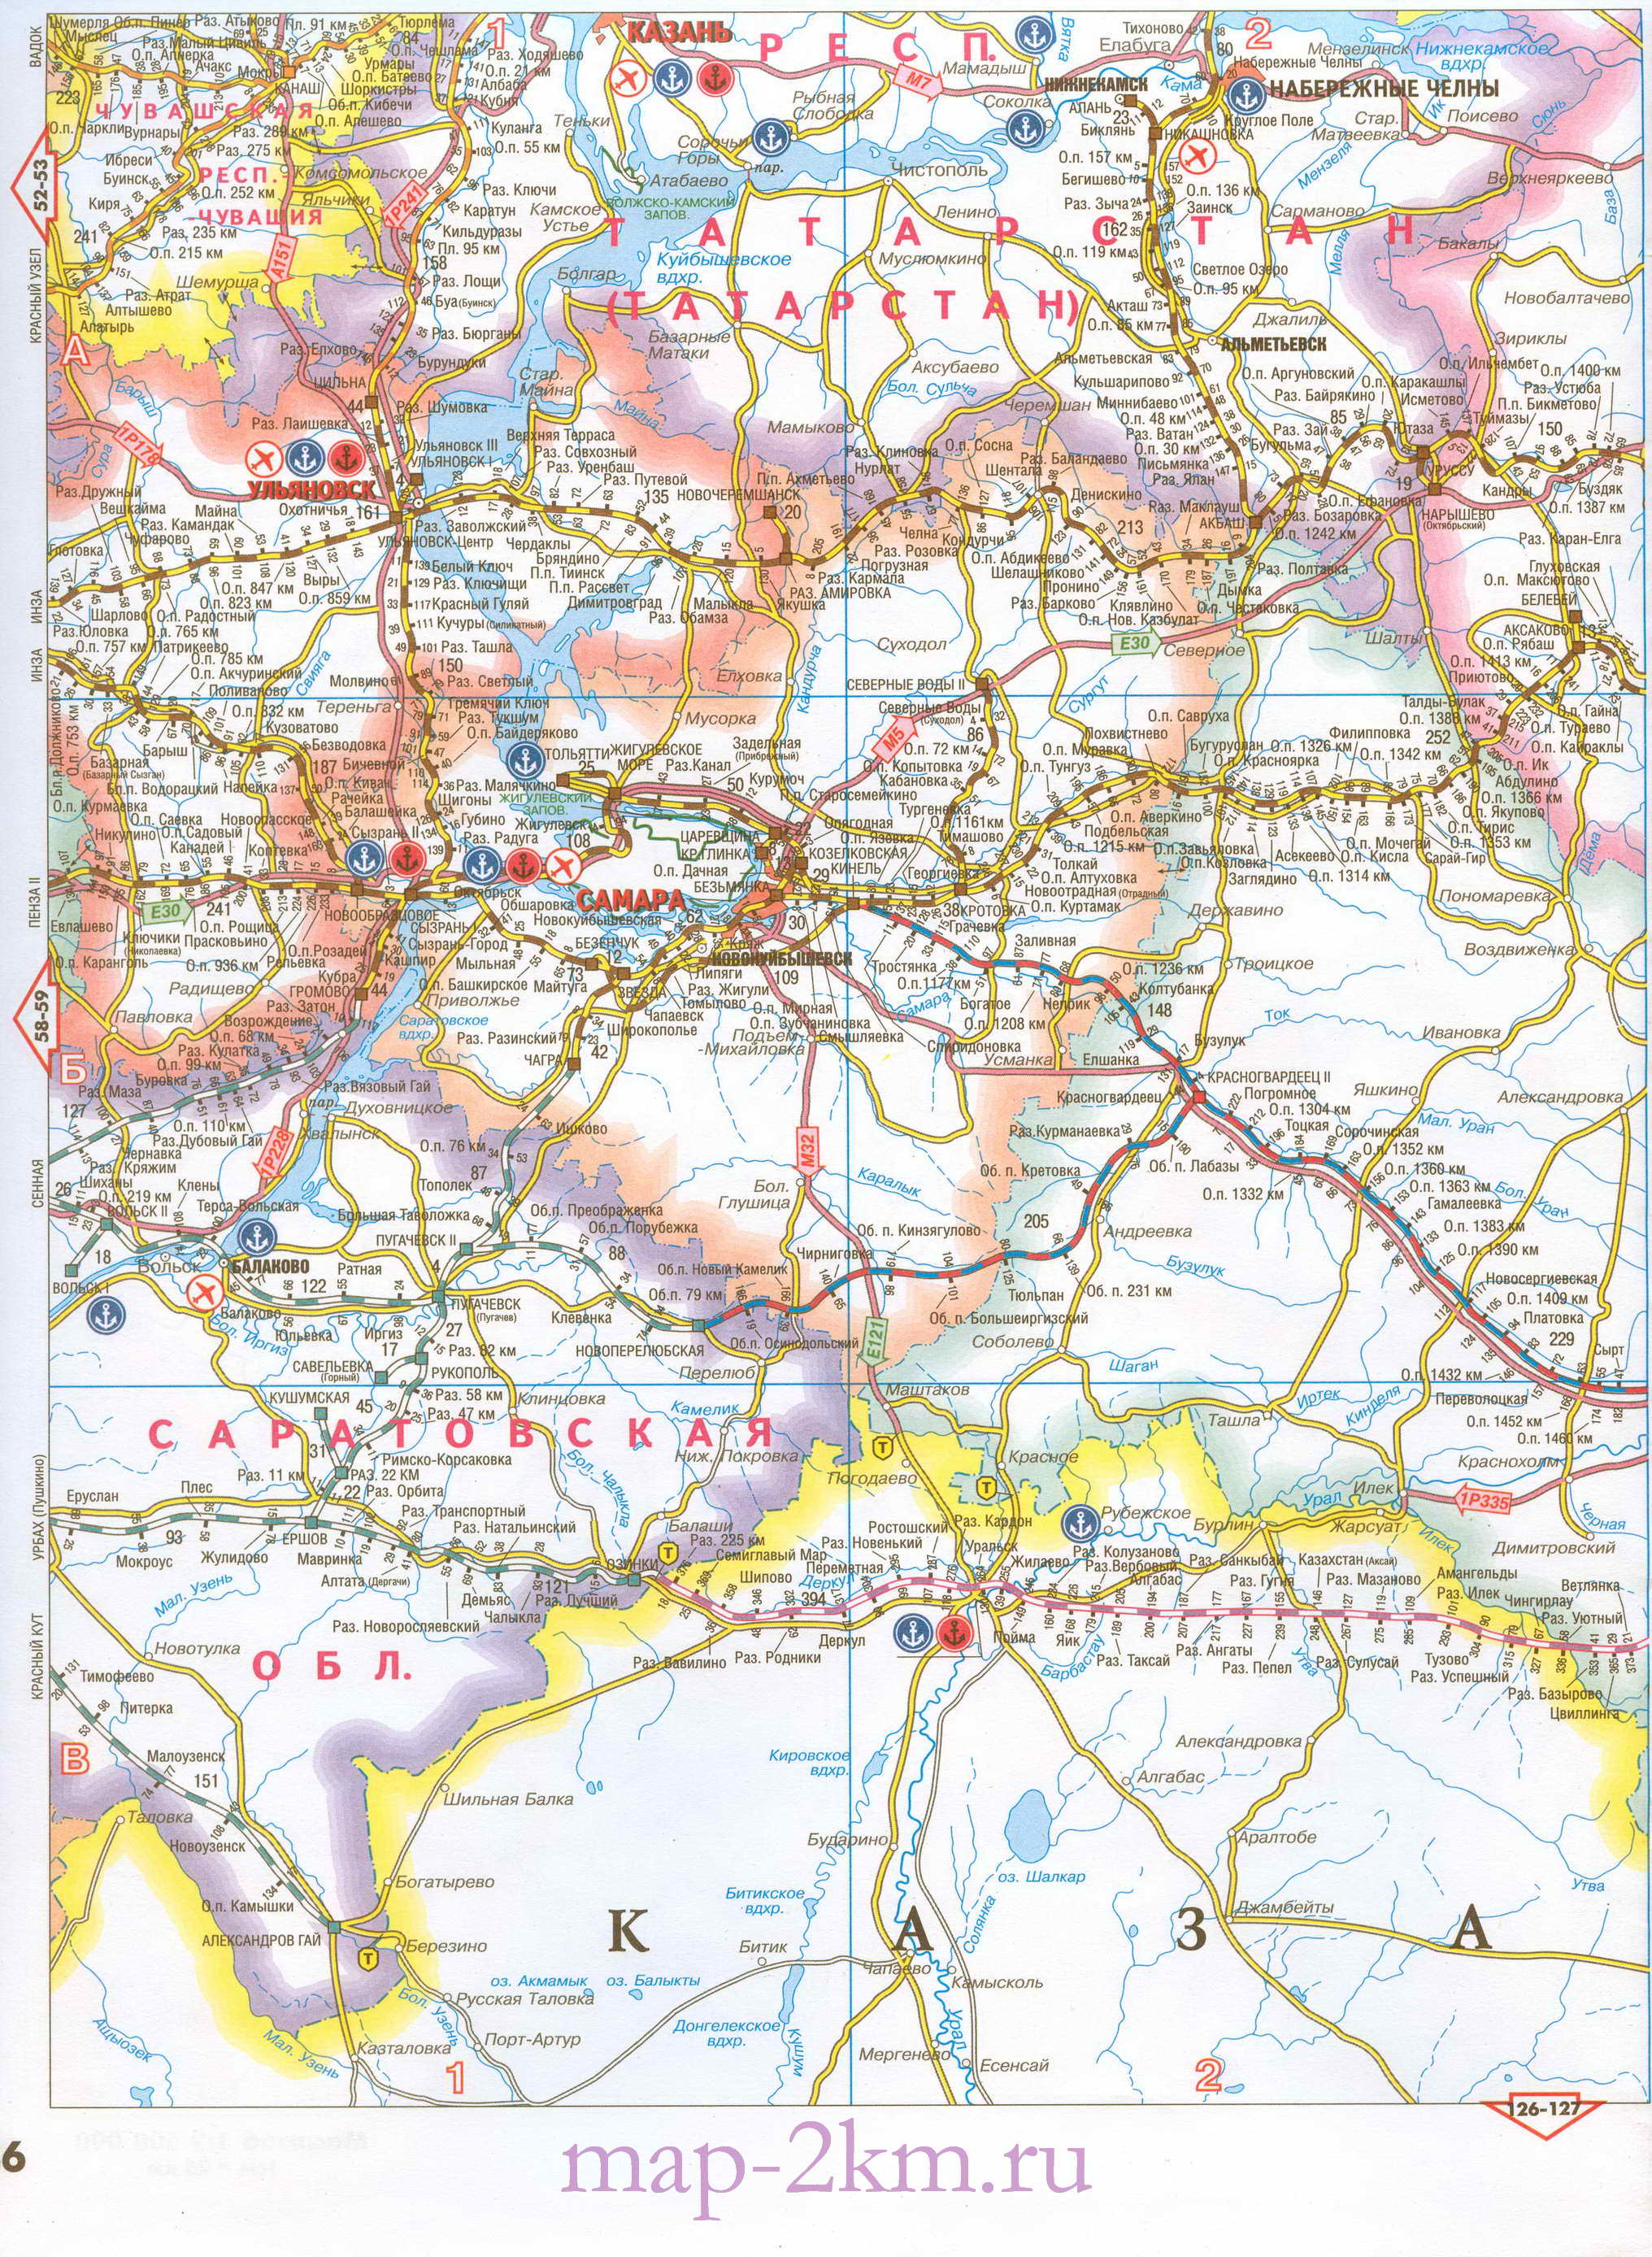 Карта Оренбургской области автомобильная и жд. Оренбургская область - подробная карта автомобильных и жд дорог 1см:25км, A0 - 